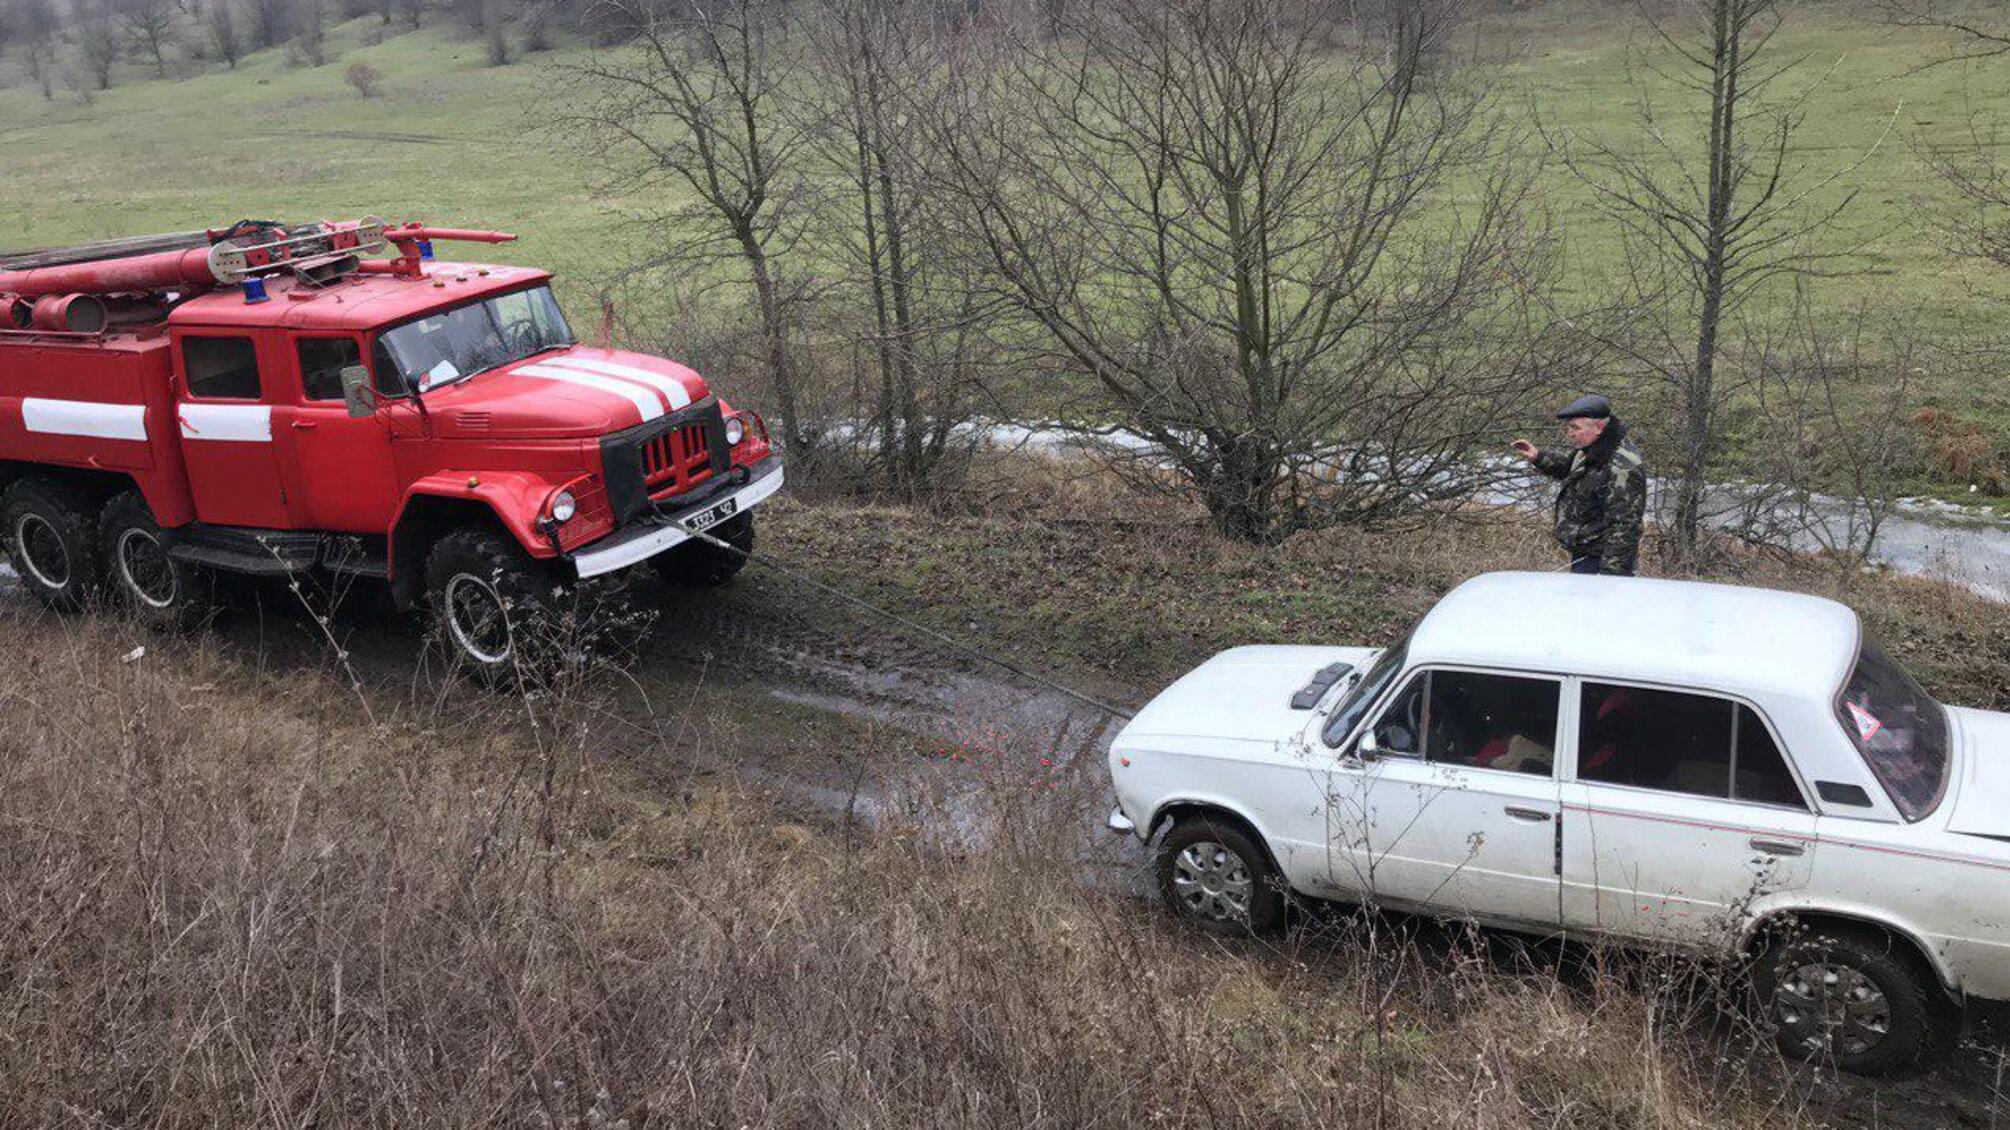 Минулої доби рятувальники Кіровоградщини 5 разів надавали допомогу водіям транспортних засобів у різних складних ситуаціях на дорогах